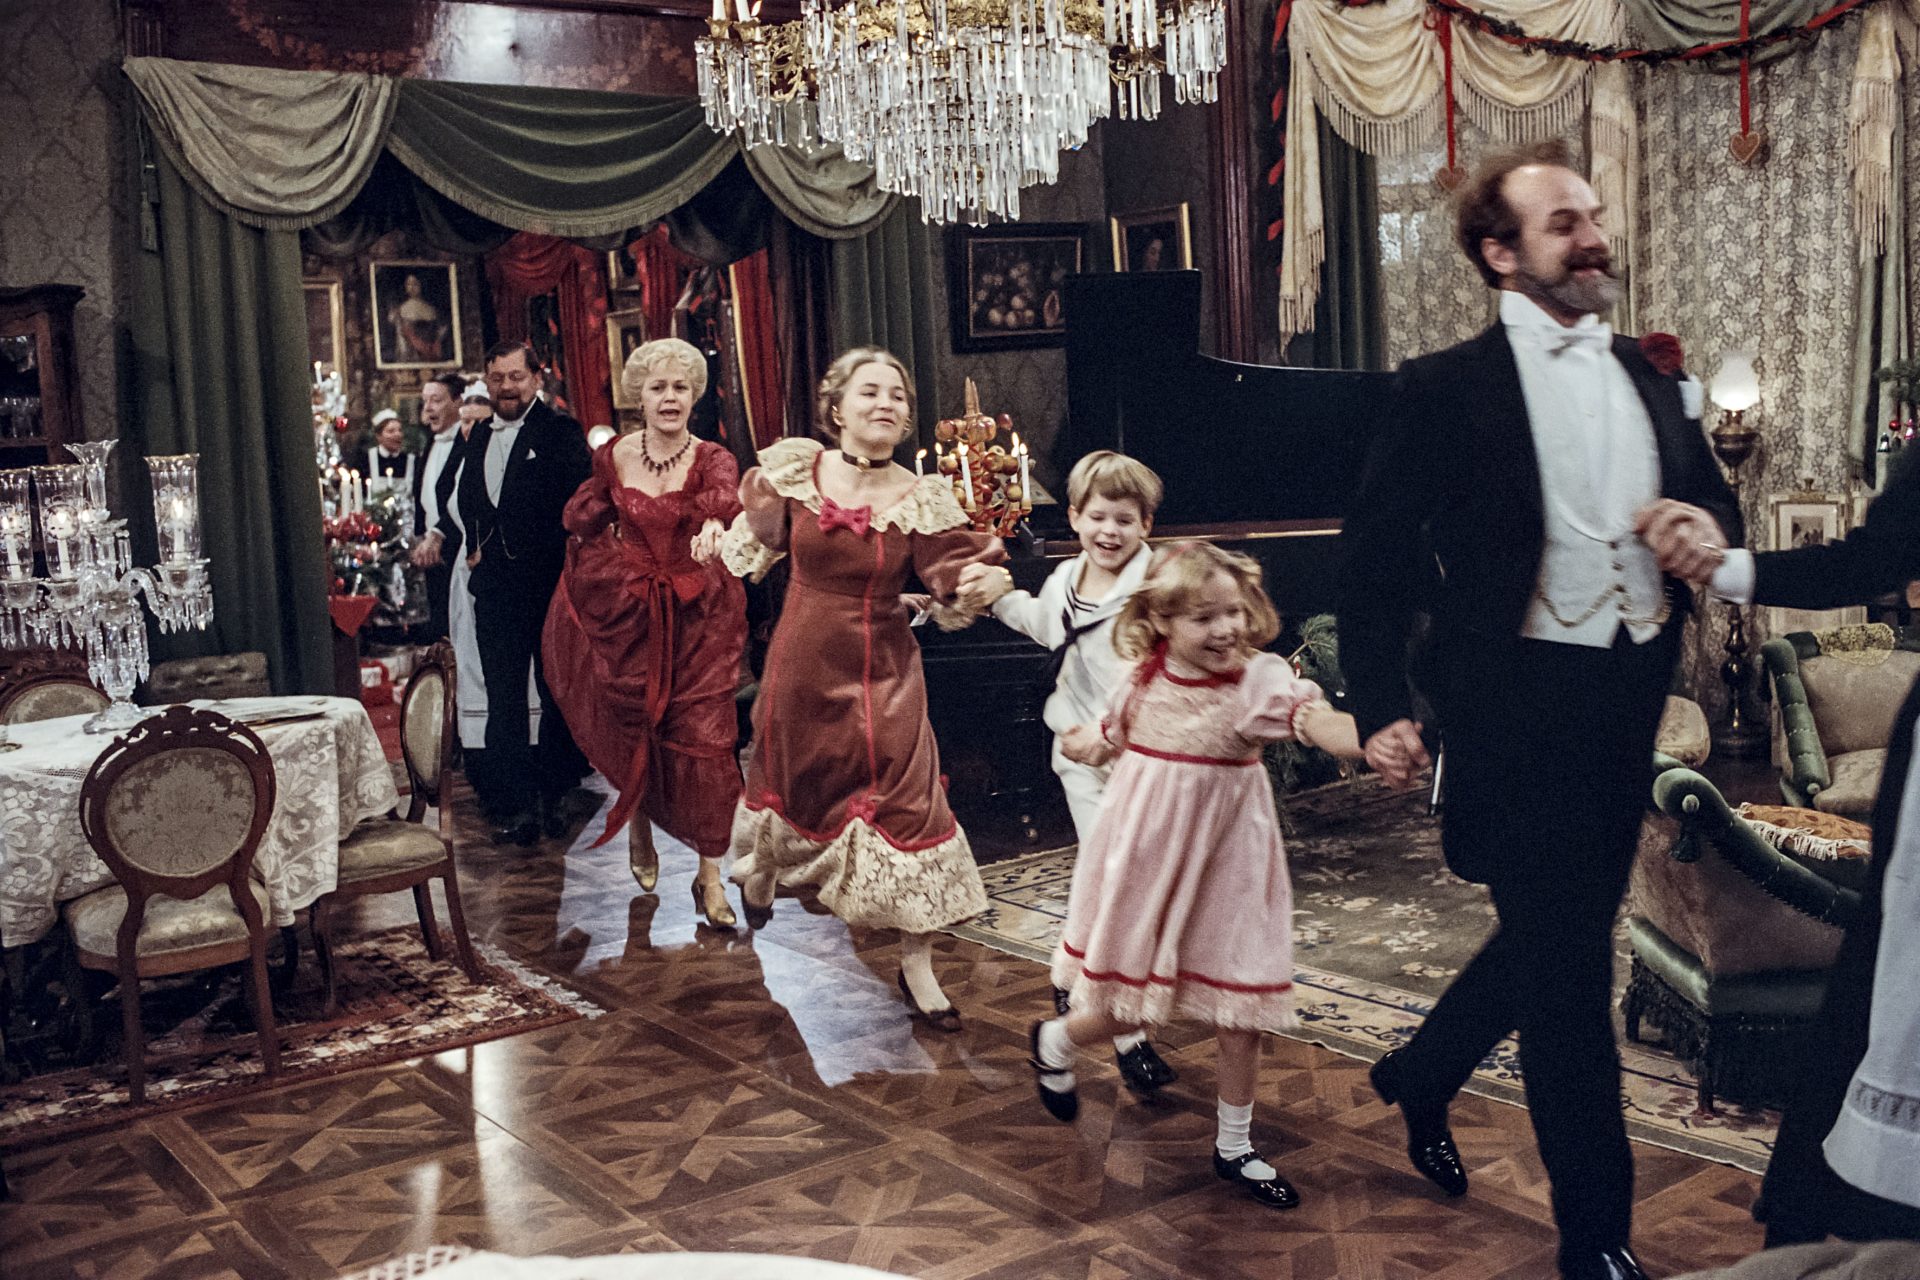 Bild ur filmen Fanny och Alexander där familjen dansar på led under julafton.